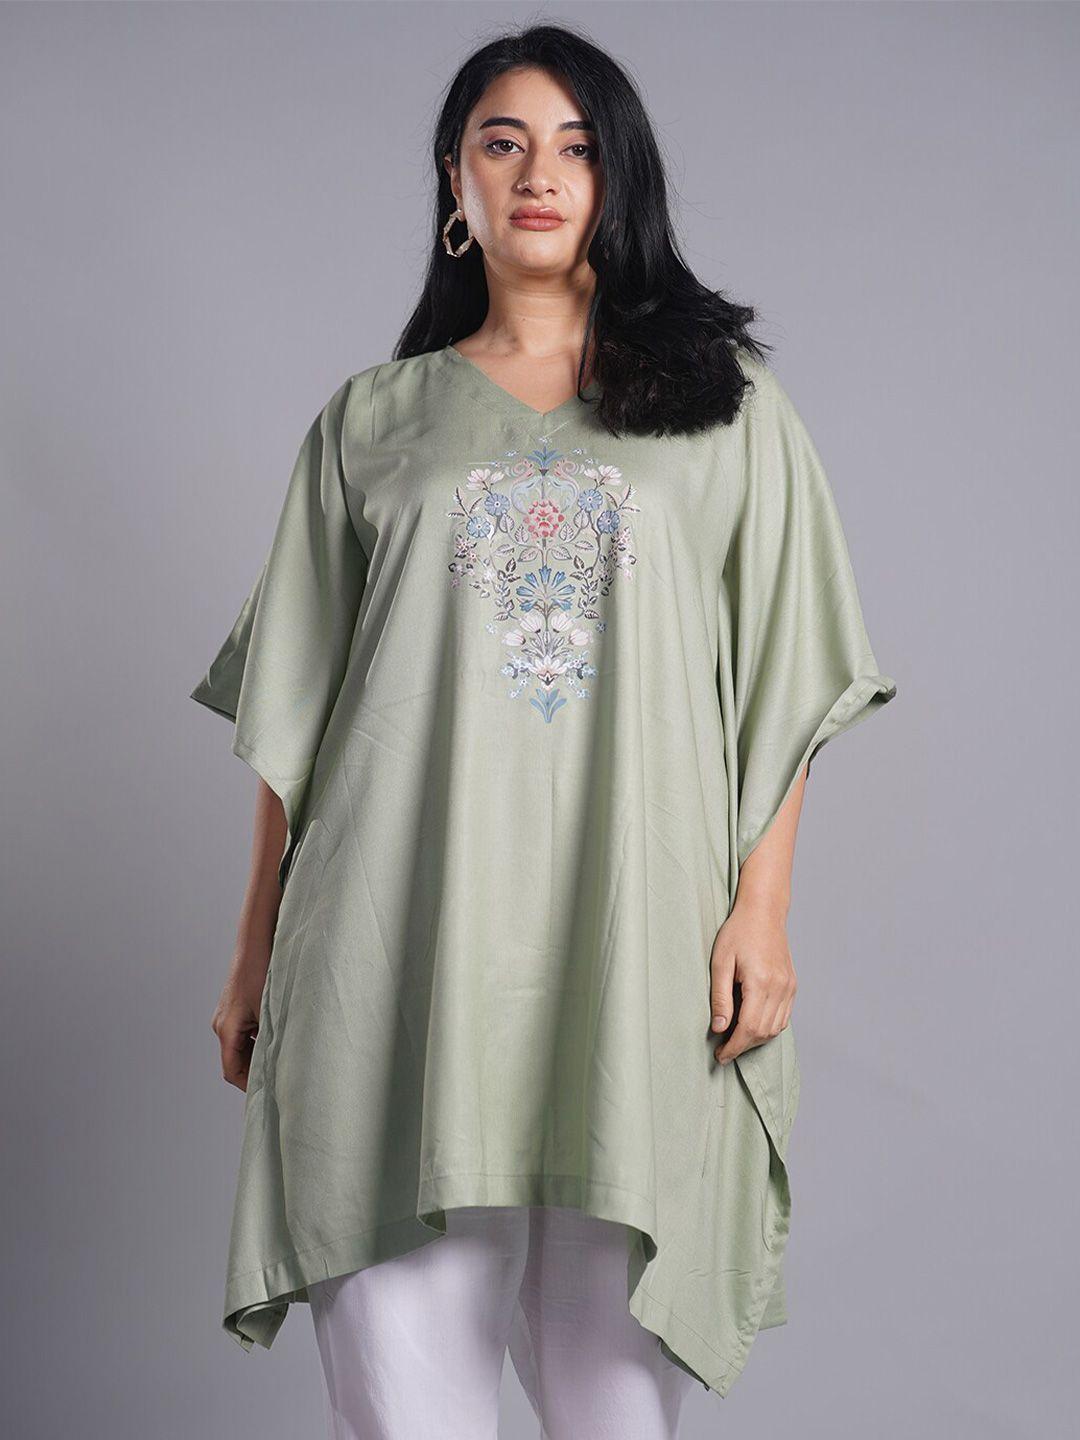 letsdressup olive green floral printed v-neck flared sleeves kaftan kurti